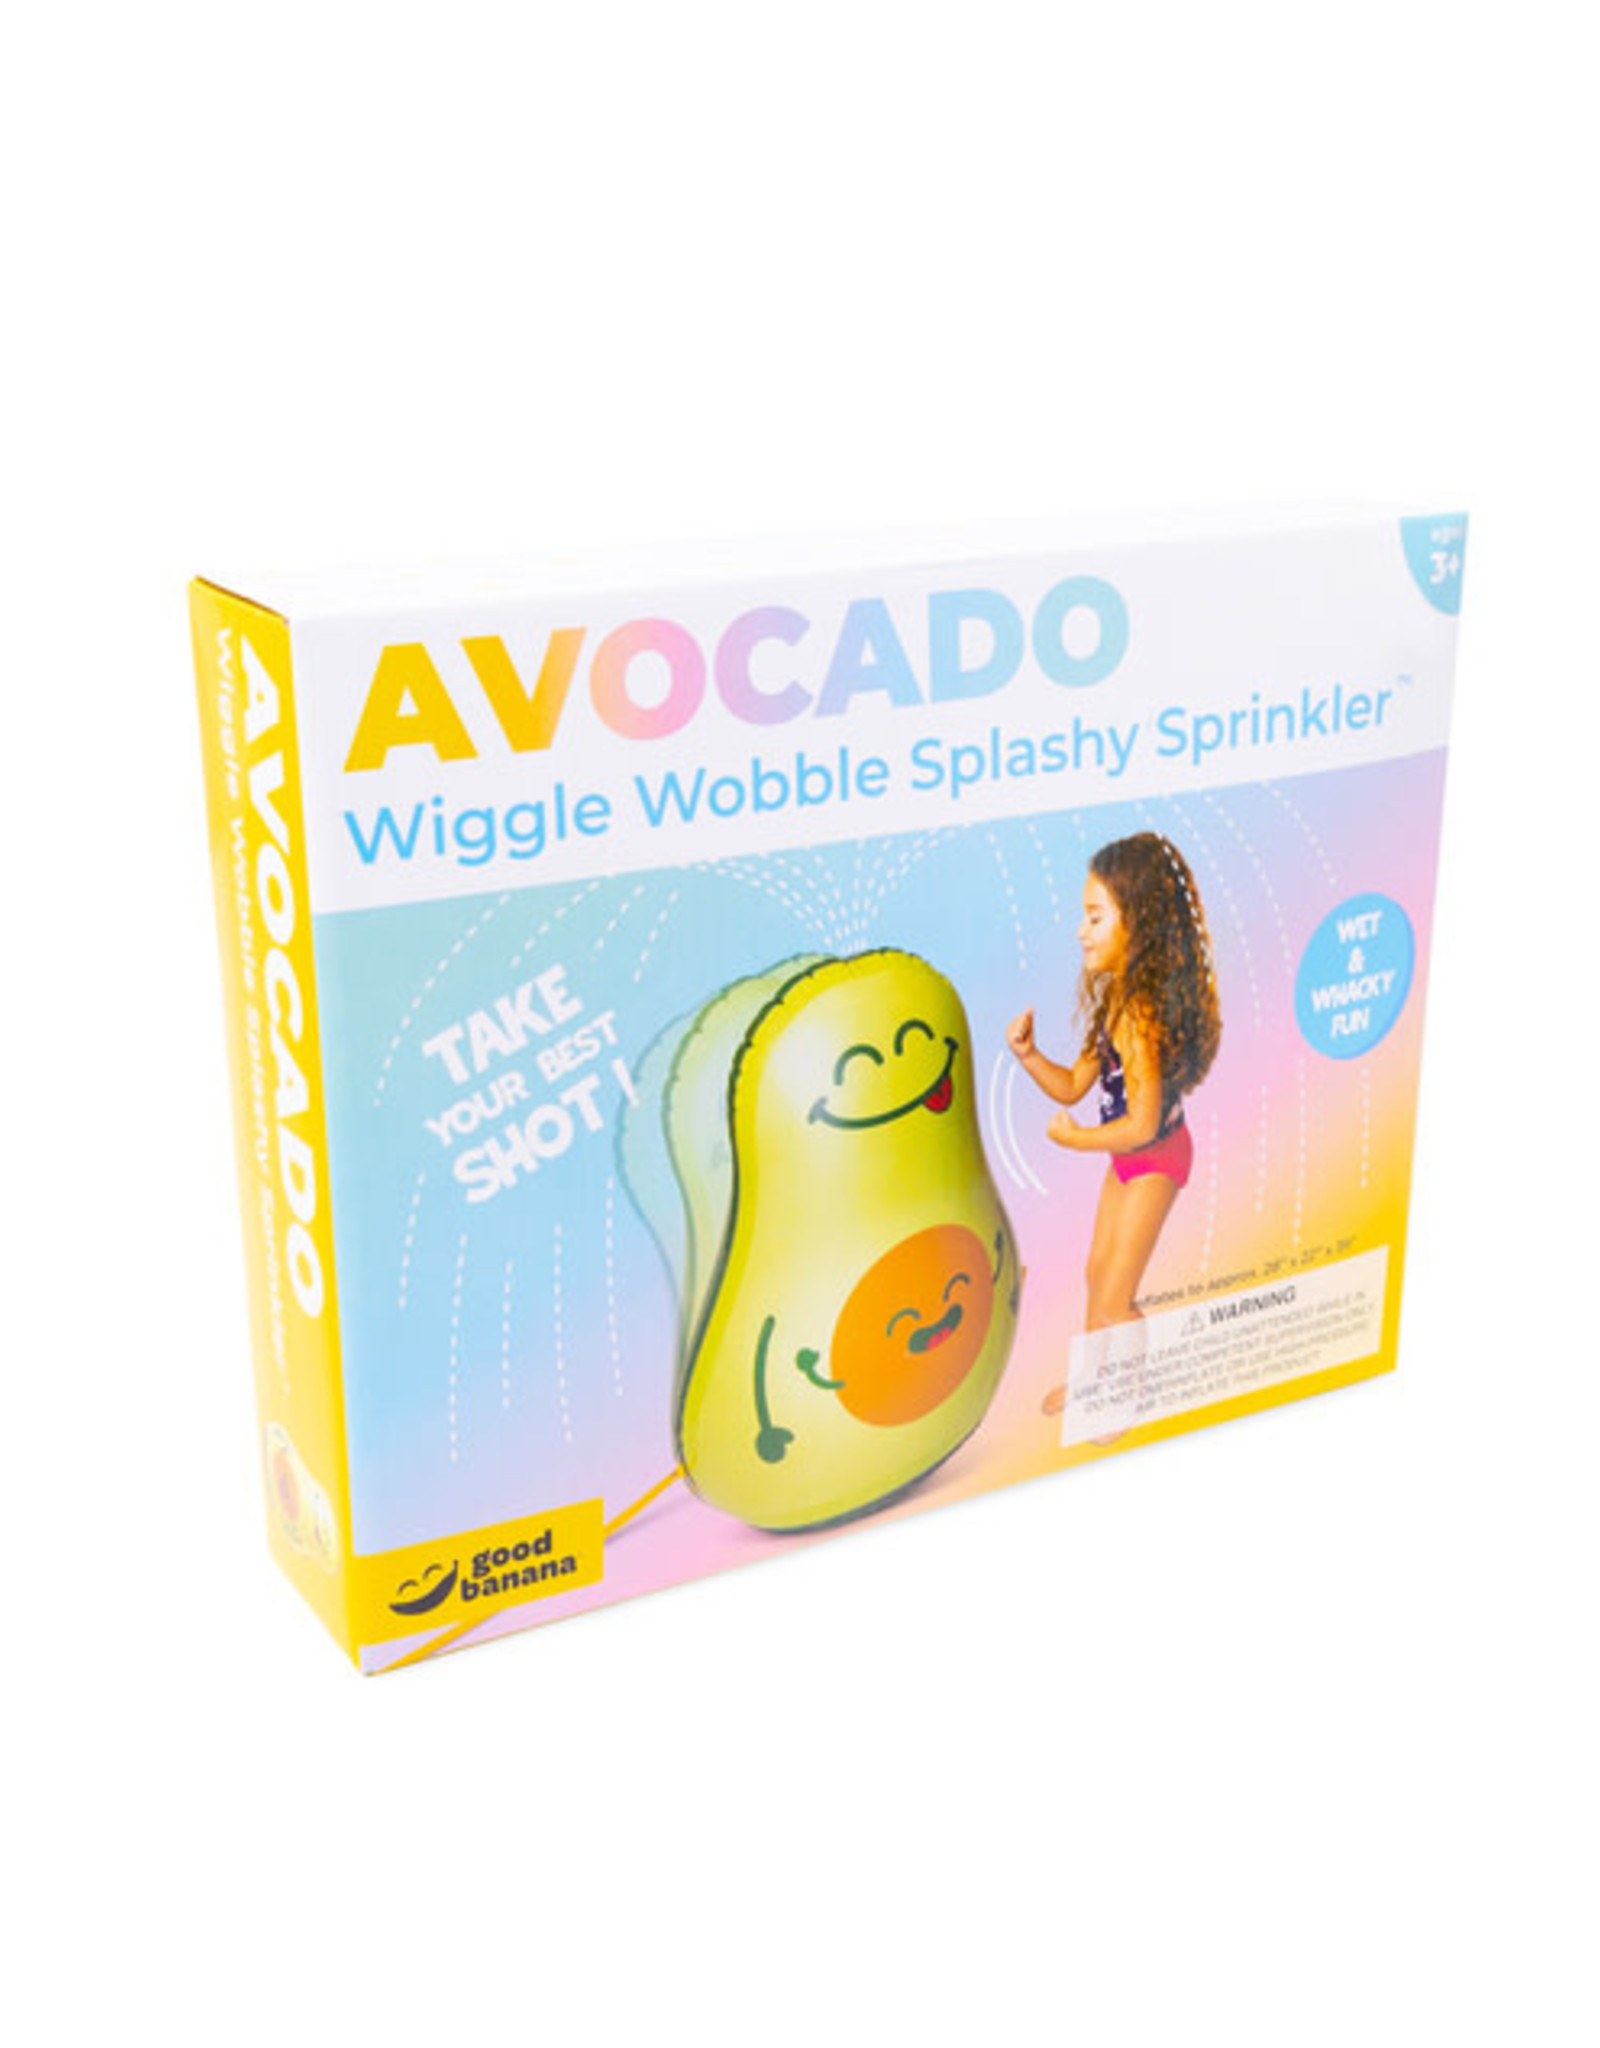 Wiggle Wobble Splashy Sprinkler - Avocado